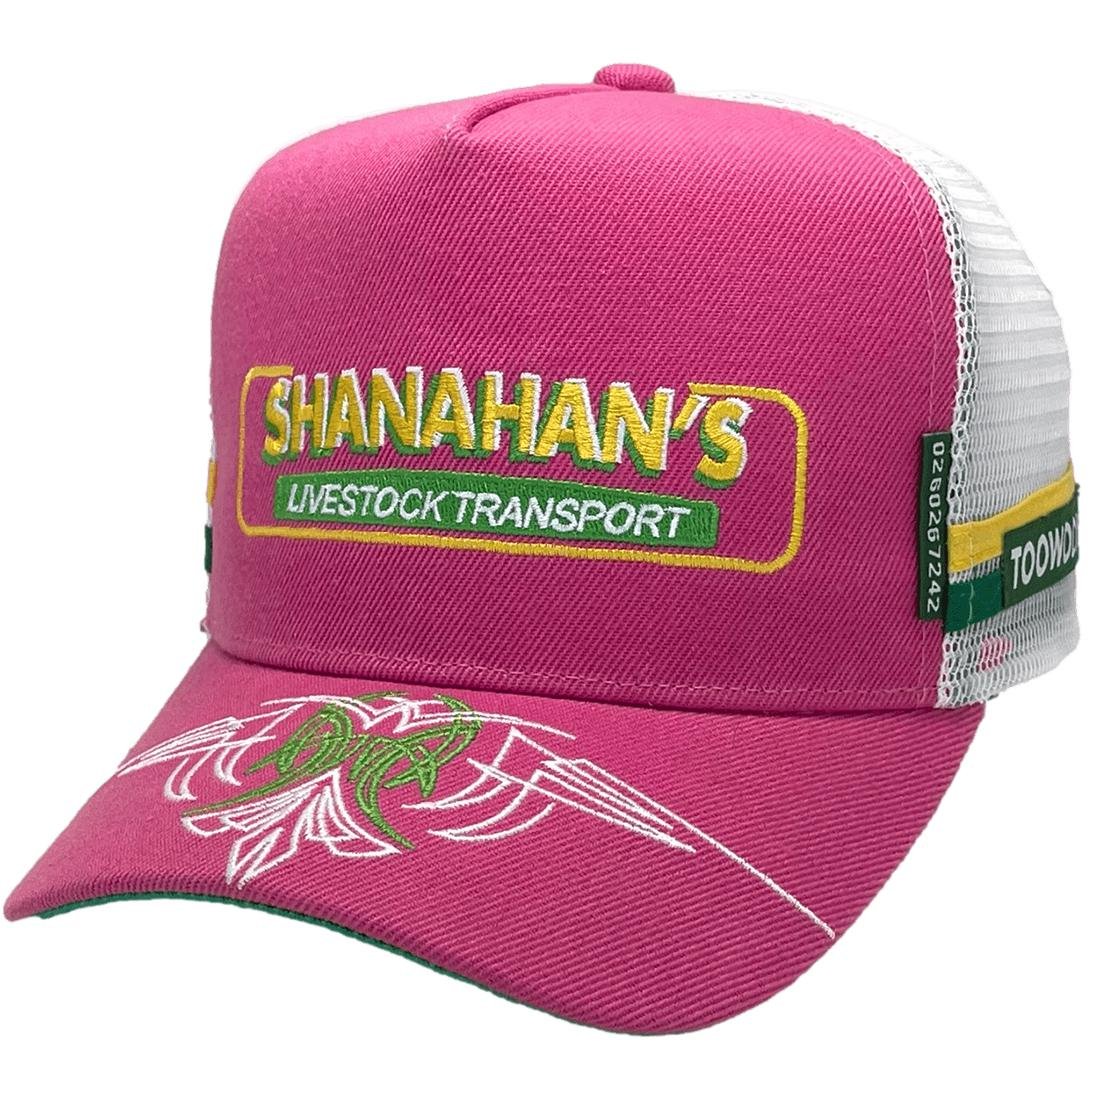 Shanahans Livestock Transport Pink Custom Power Trucker Hat